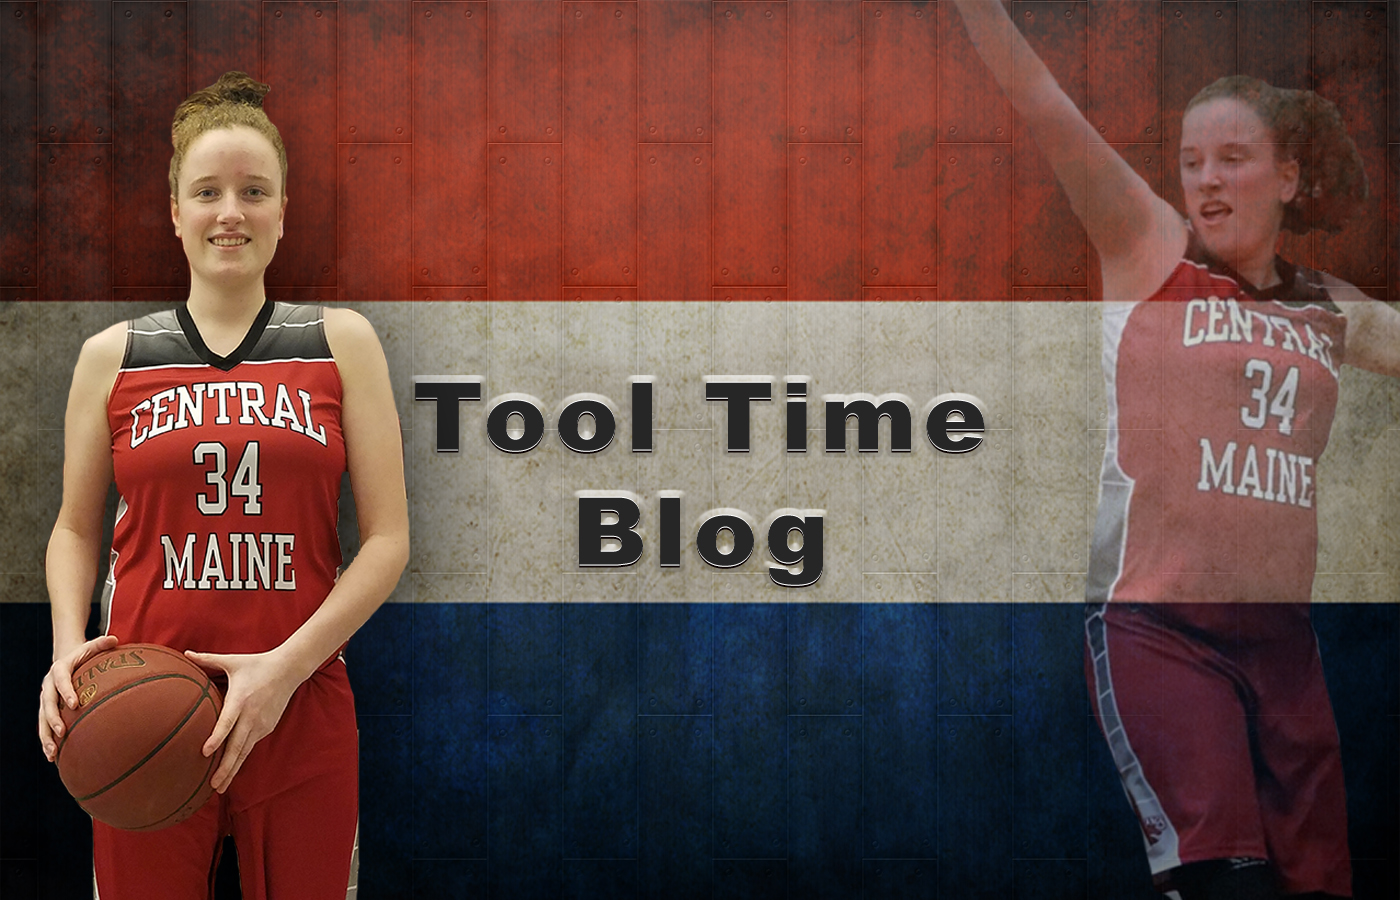 Tool Time Blog - 7/16/2019